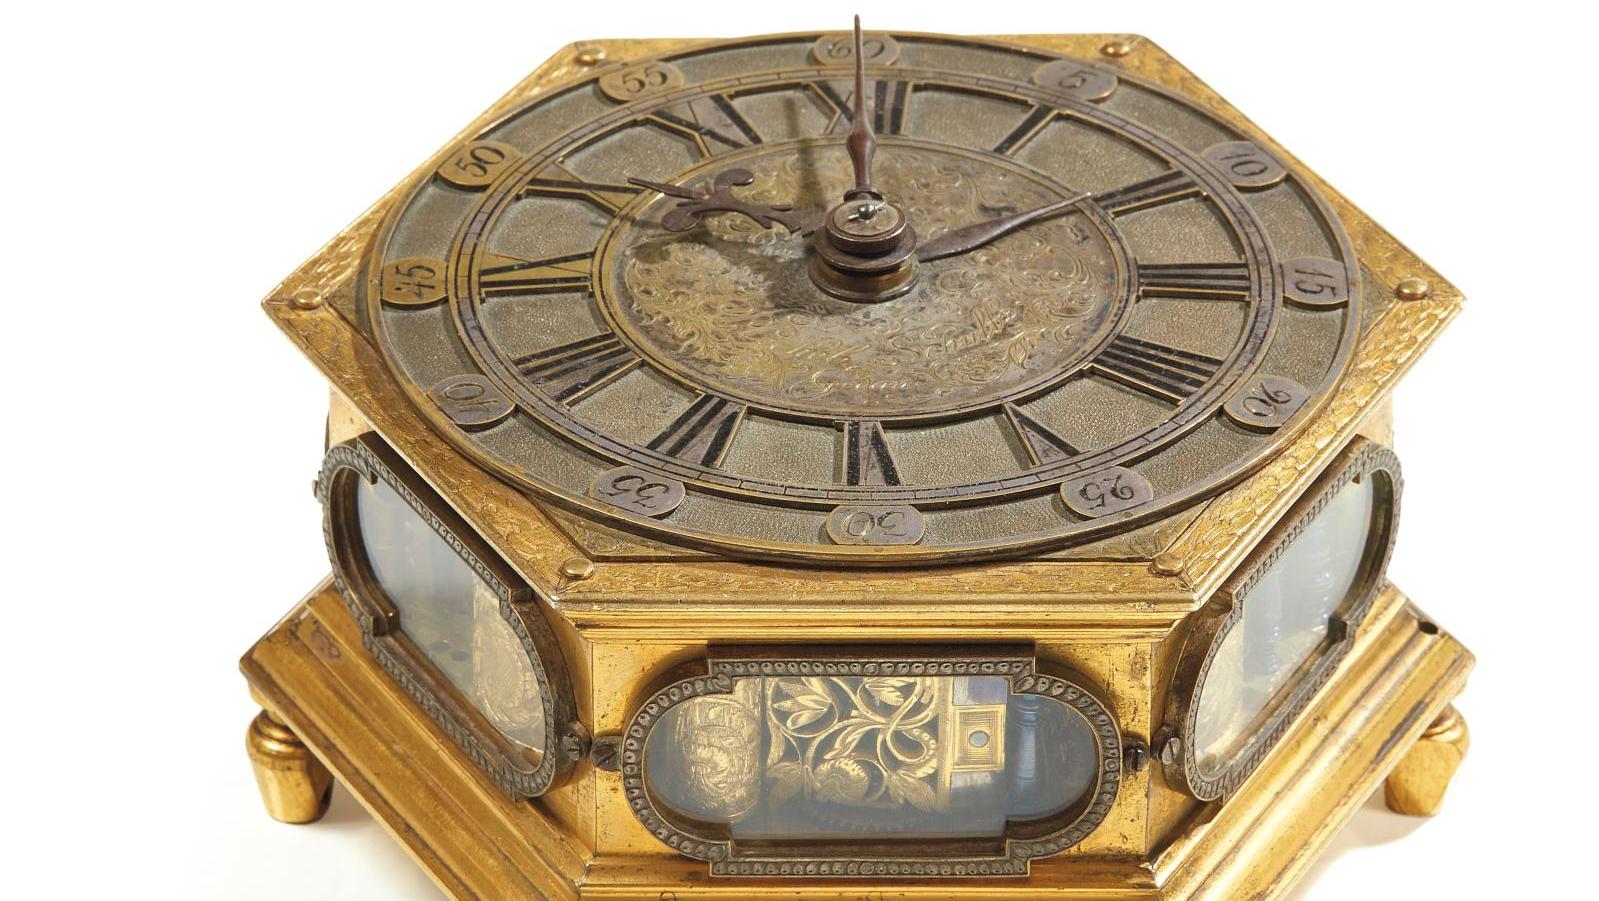 Pendule de table en bronze ou laiton, gravé, doré ou argenté, le cadran à fond amati... Précision germanique du début du XVIIe siècle